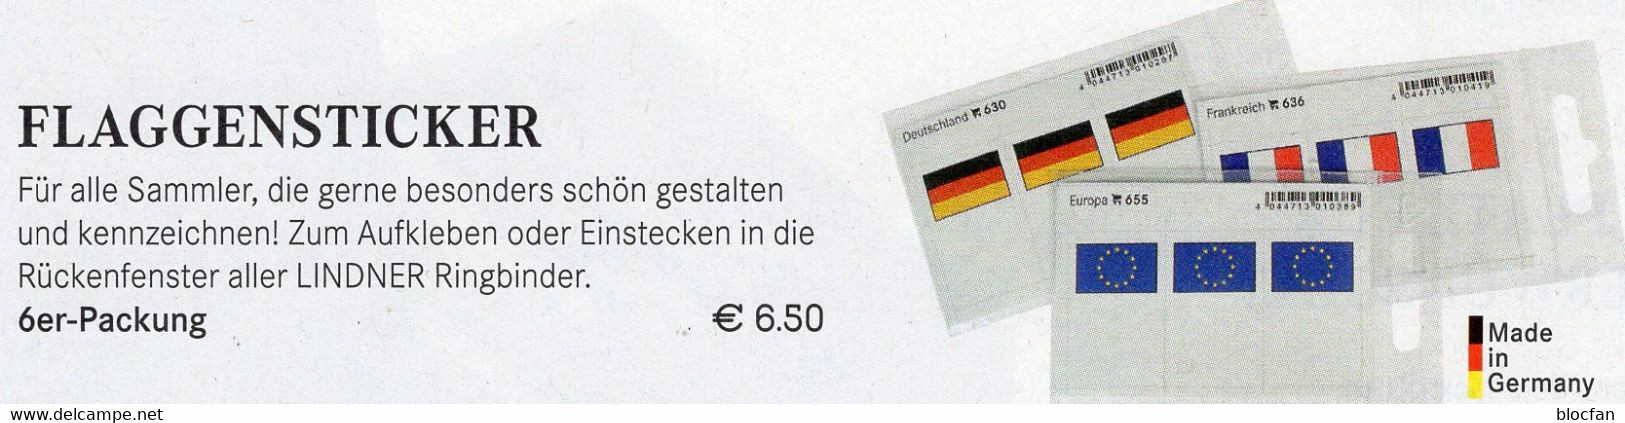 Farbe 3x2 Flaggen-Sticker Variabel 6-Pack 7€ Zur Kennzeichnung Von Alben+Sammlungen Firma LINDNER #600 Flag Of The World - Sobres